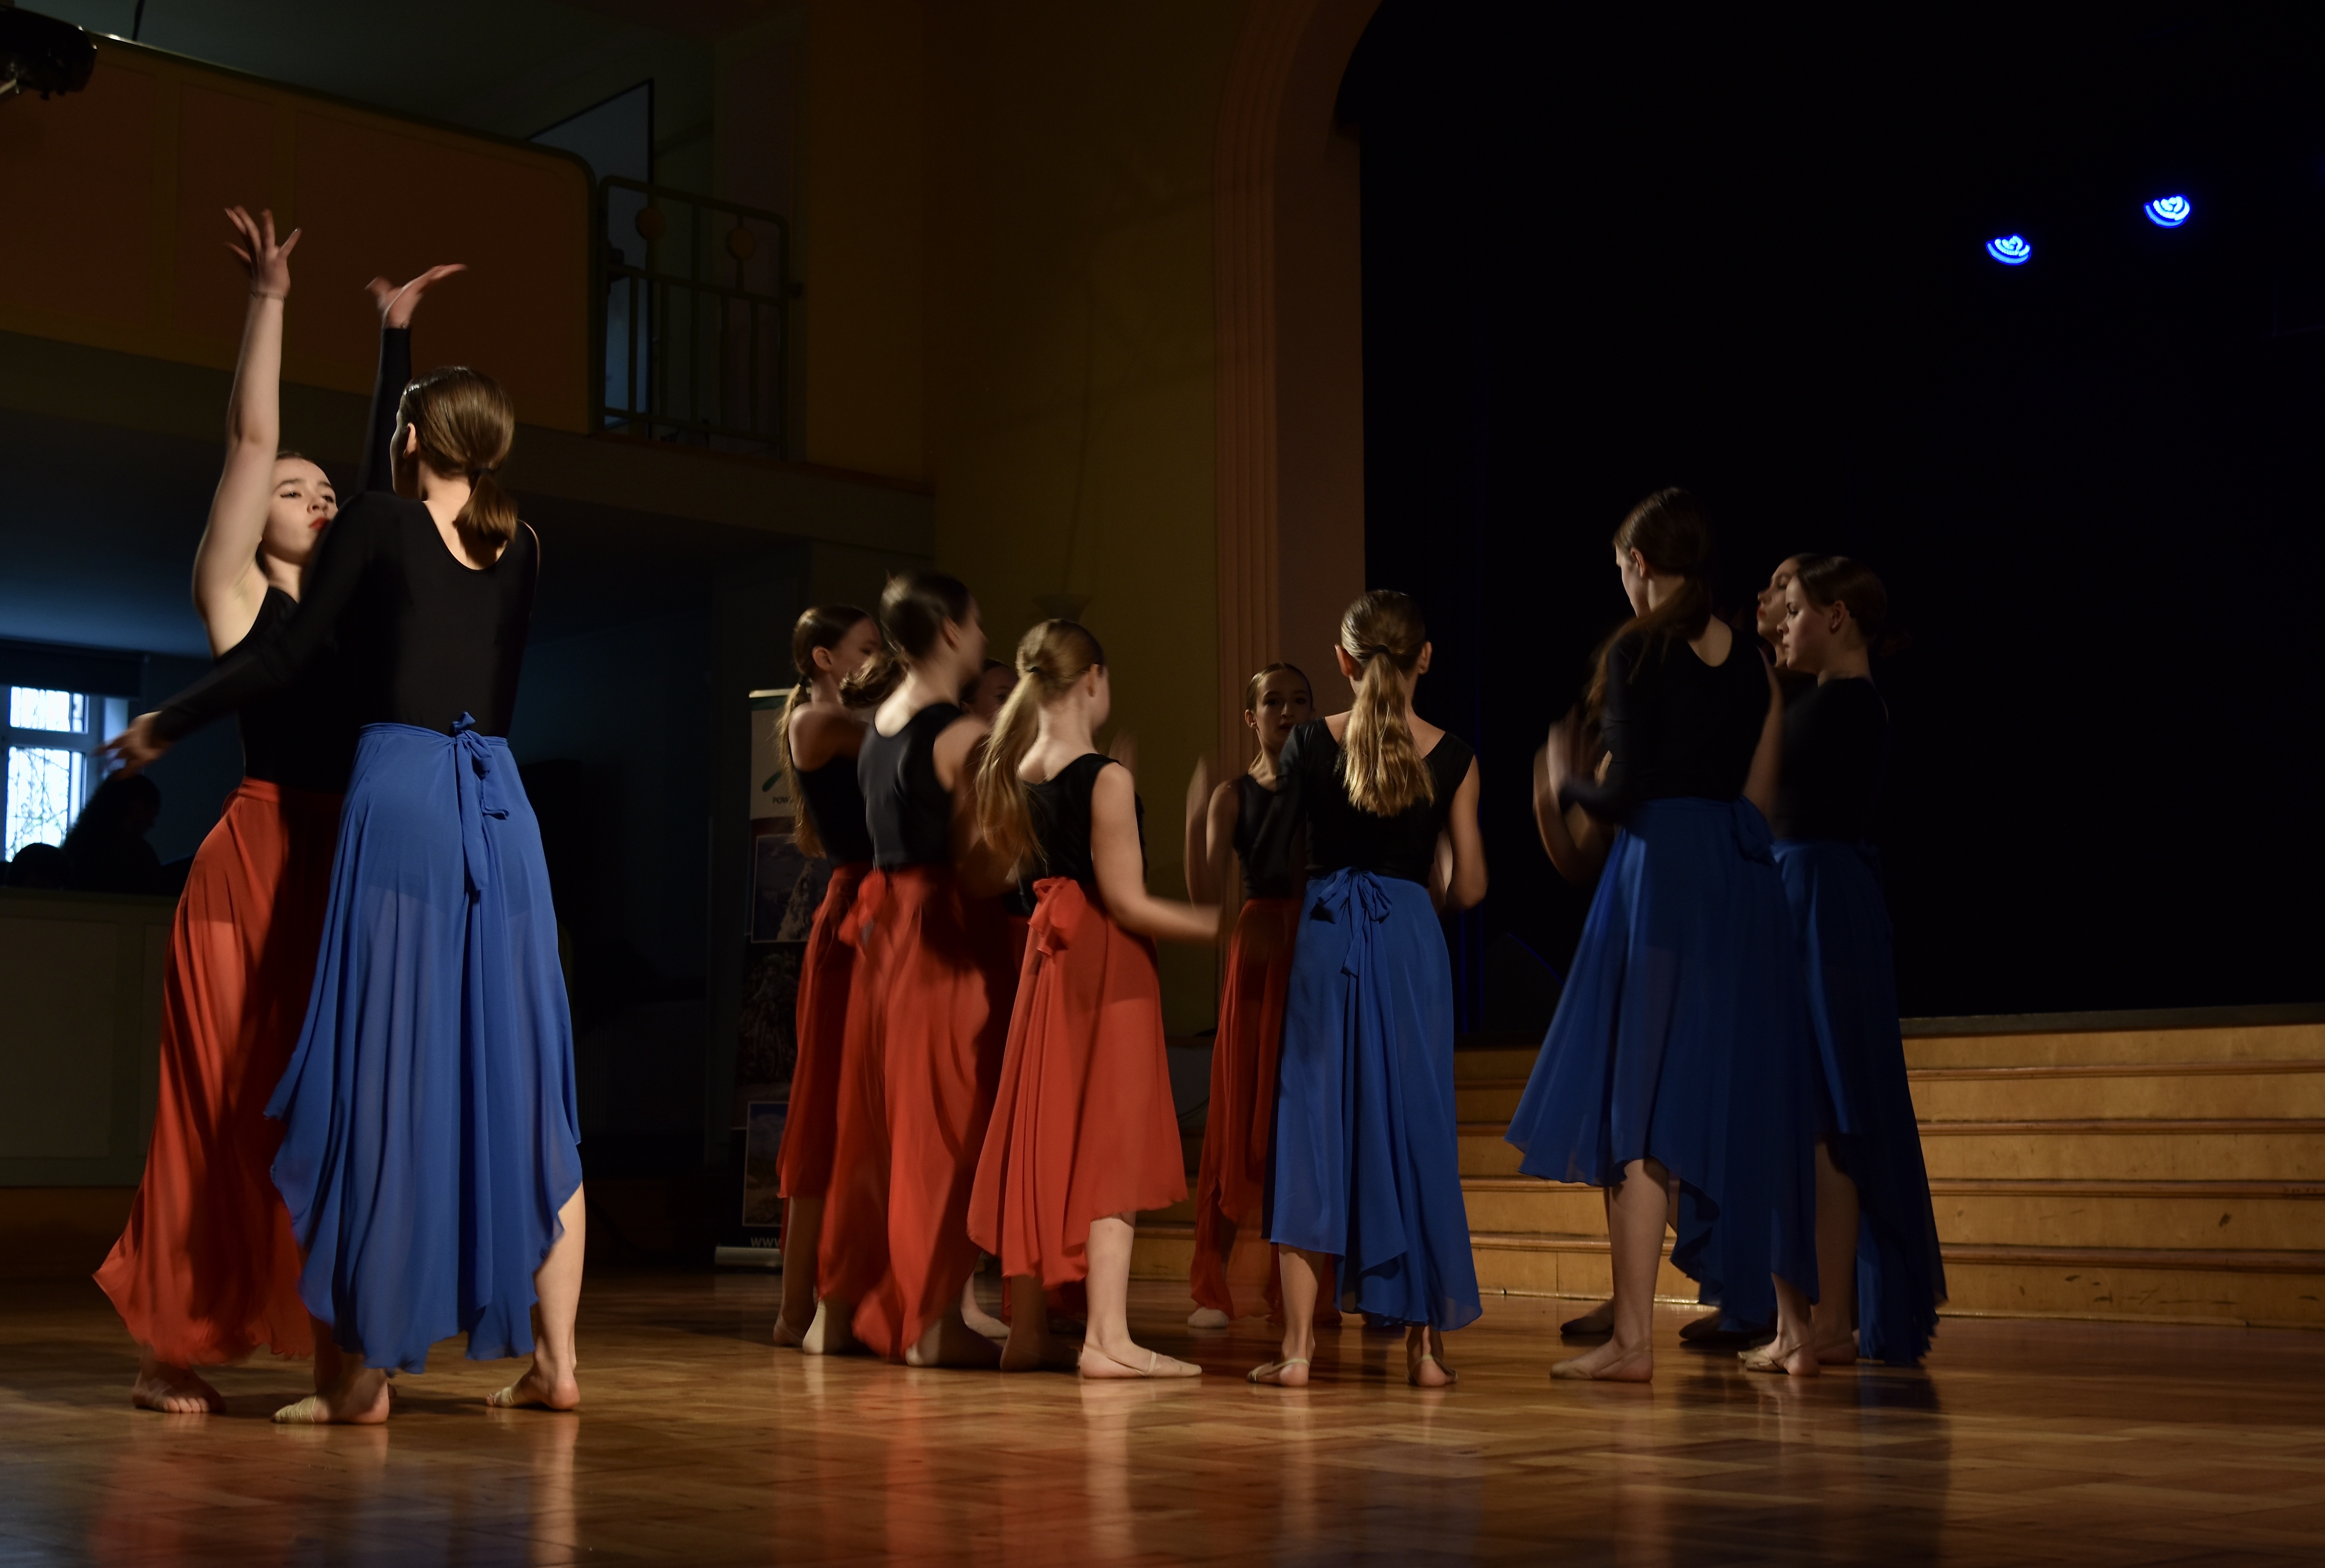 konkurs SAGA 2023 w DK w Kozach. Na zdjęciu zespół taneczny Etiuda podczas występu.